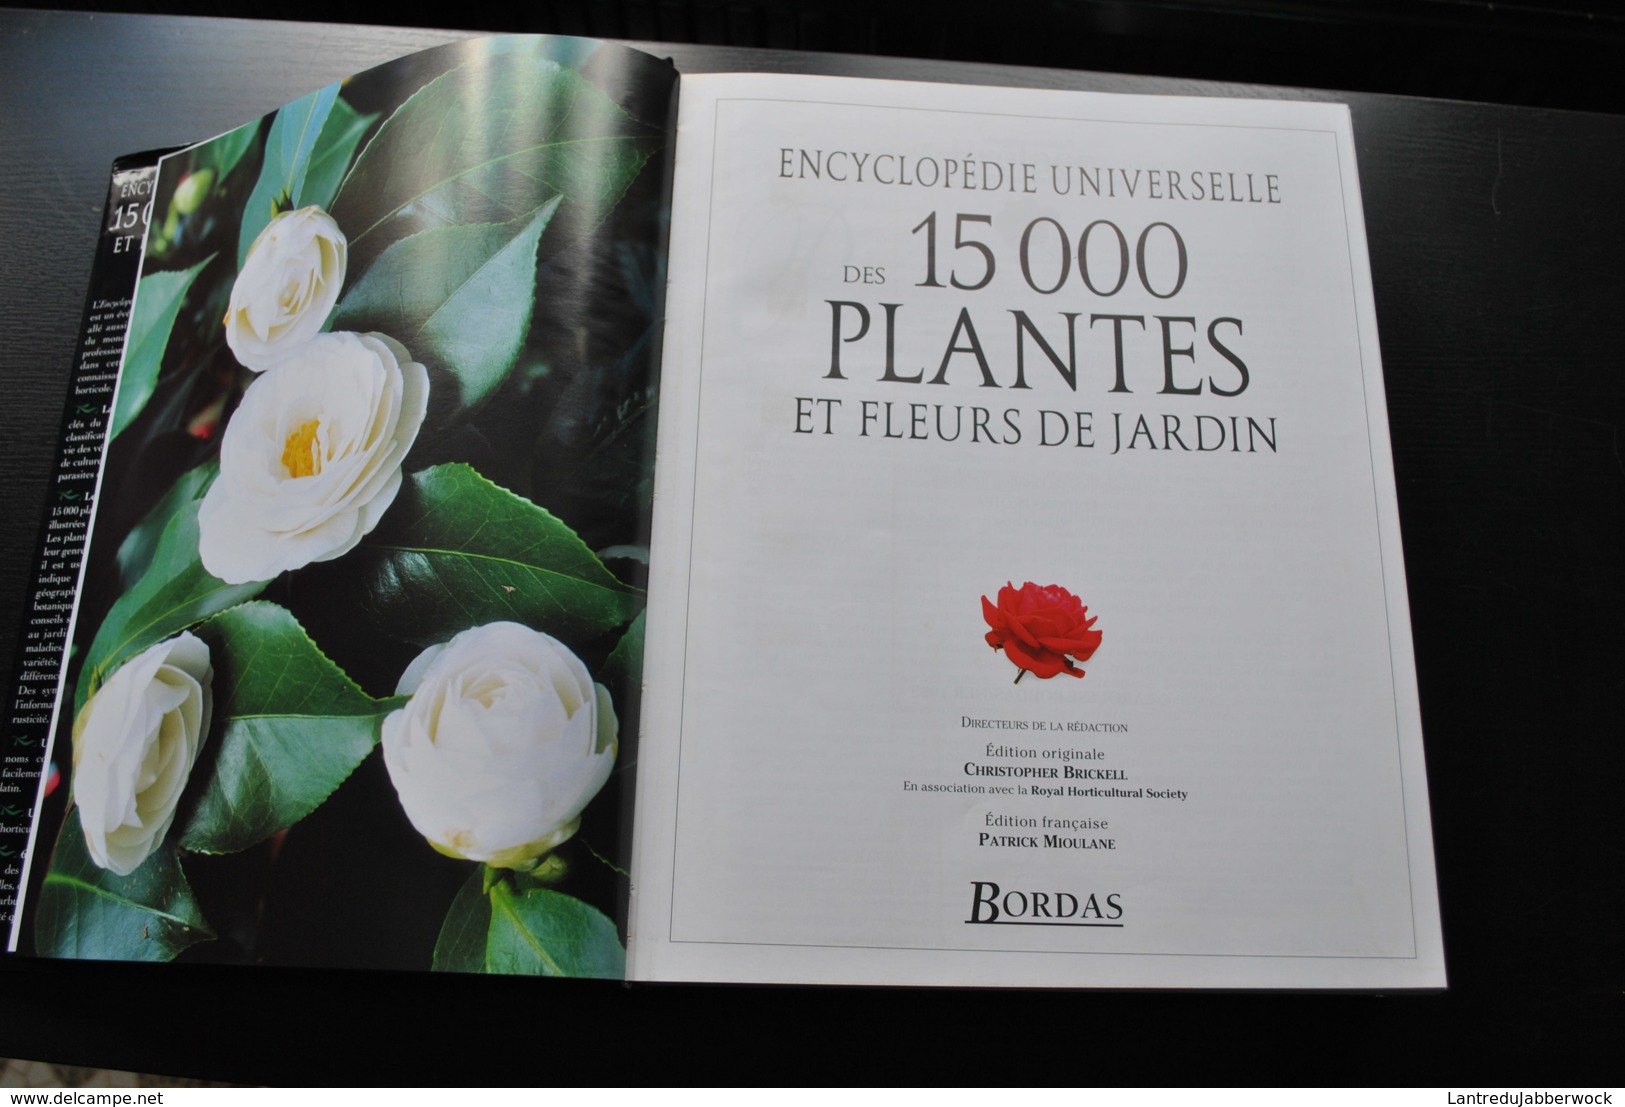 ENCYCLOPEDIE UNIVERSELLE DES 15000 PLANTES ET FLEURS DE JARDIN DE A à Z 6000 PHOTOGRAPHIES 1080 PAGES - BORDAS 1999 Rare - Encyclopédies